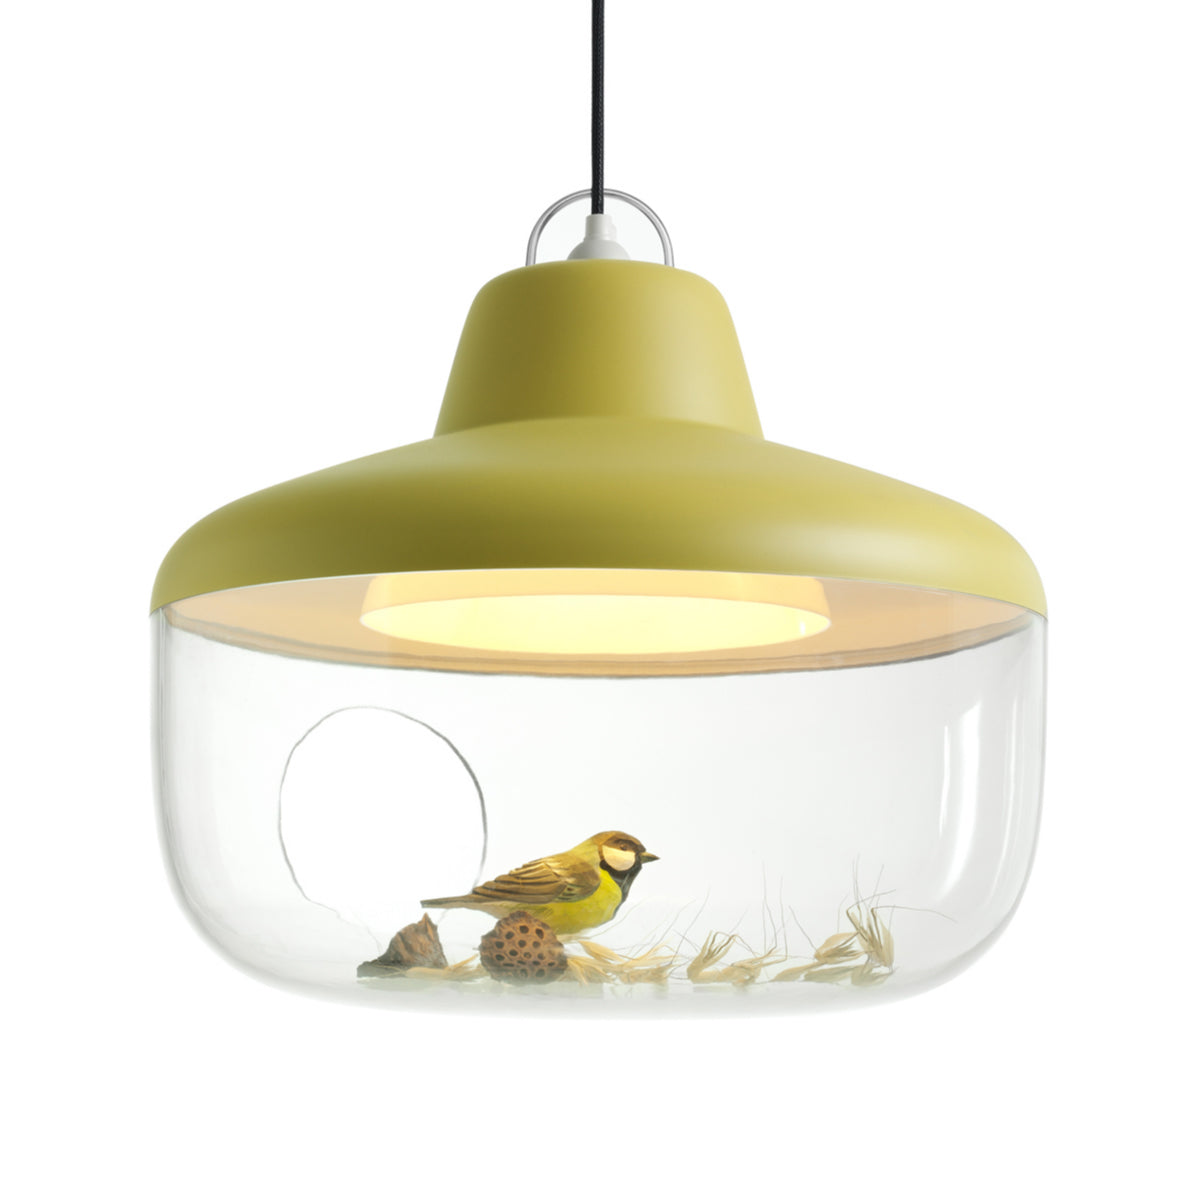 Купить лампу подвесную. Подвесной светильник. Подвесной светильник с птичкой. Подвесные светильники потолочные. Потолочный светильник с птичками.